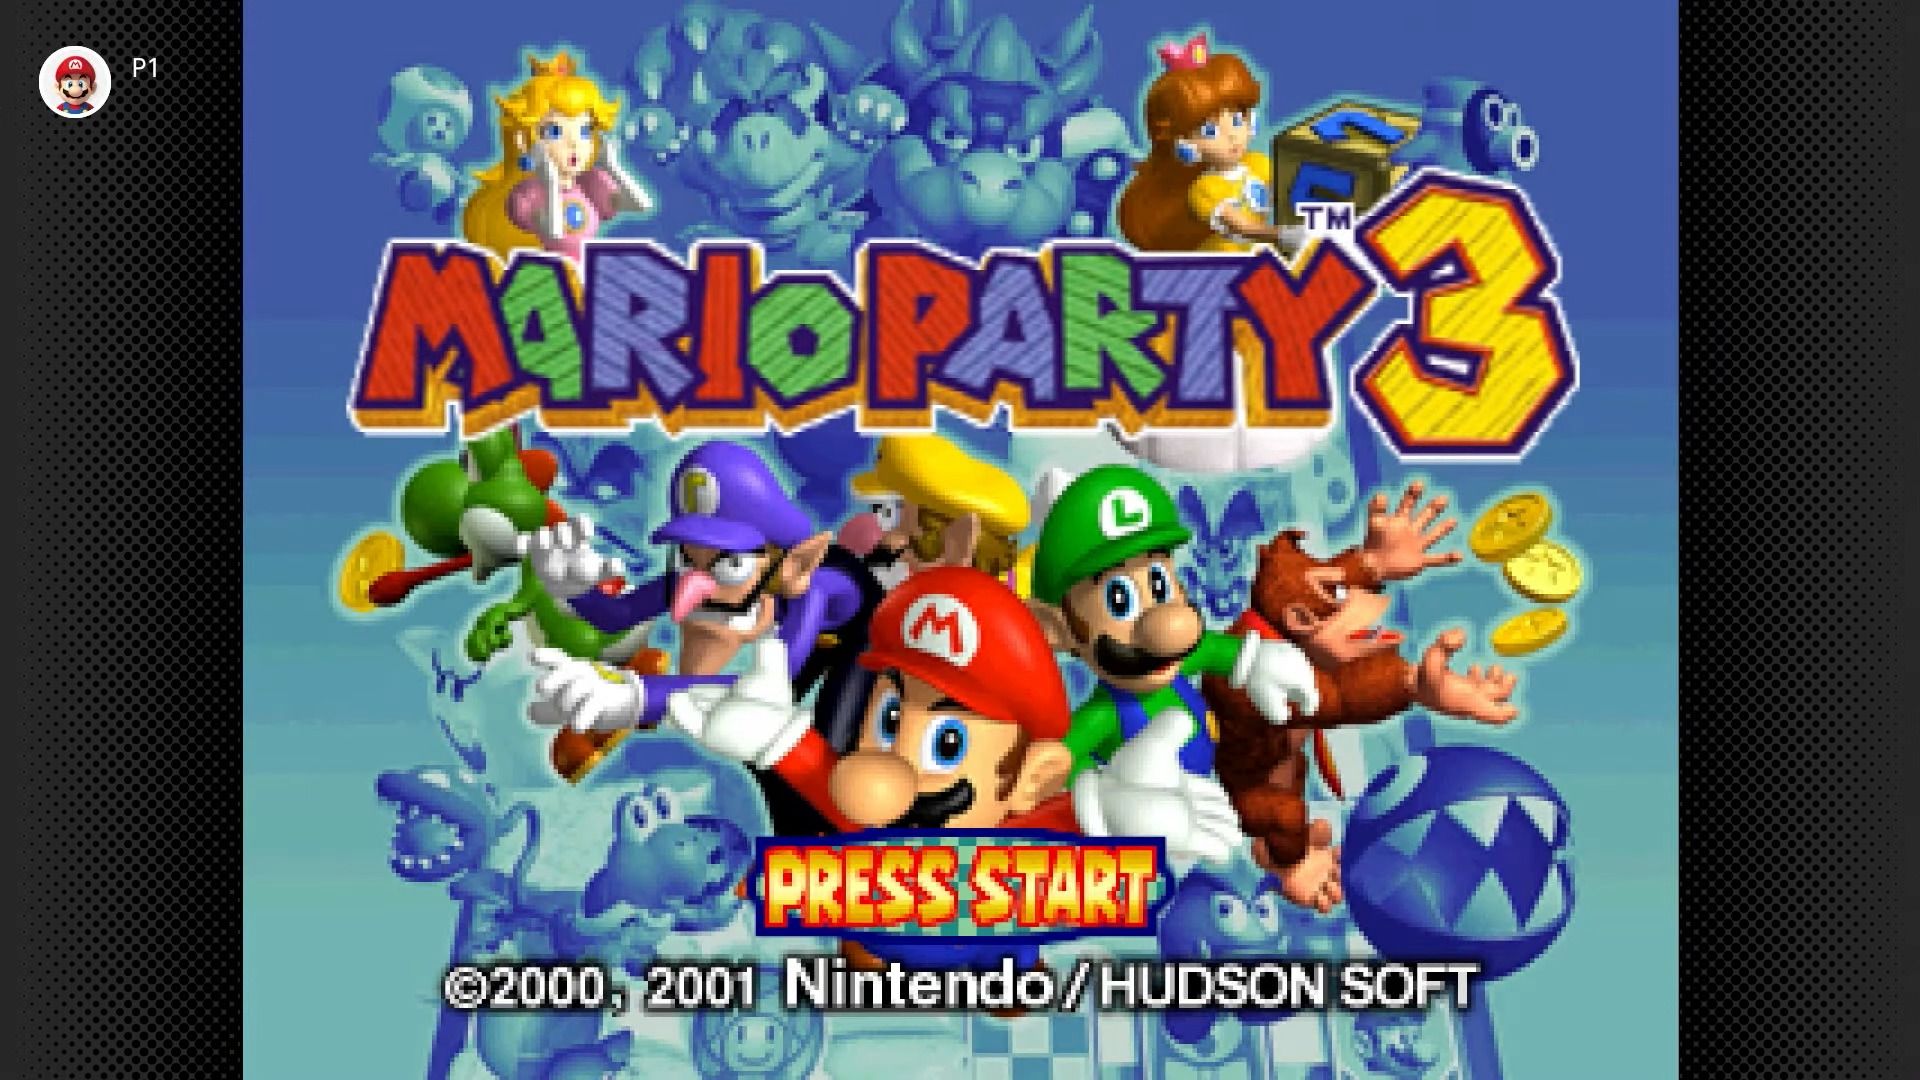 #Mario Party 3: Der N64-Klassiker erlebt bei Nintendo Switch Online seine Wiedergeburt